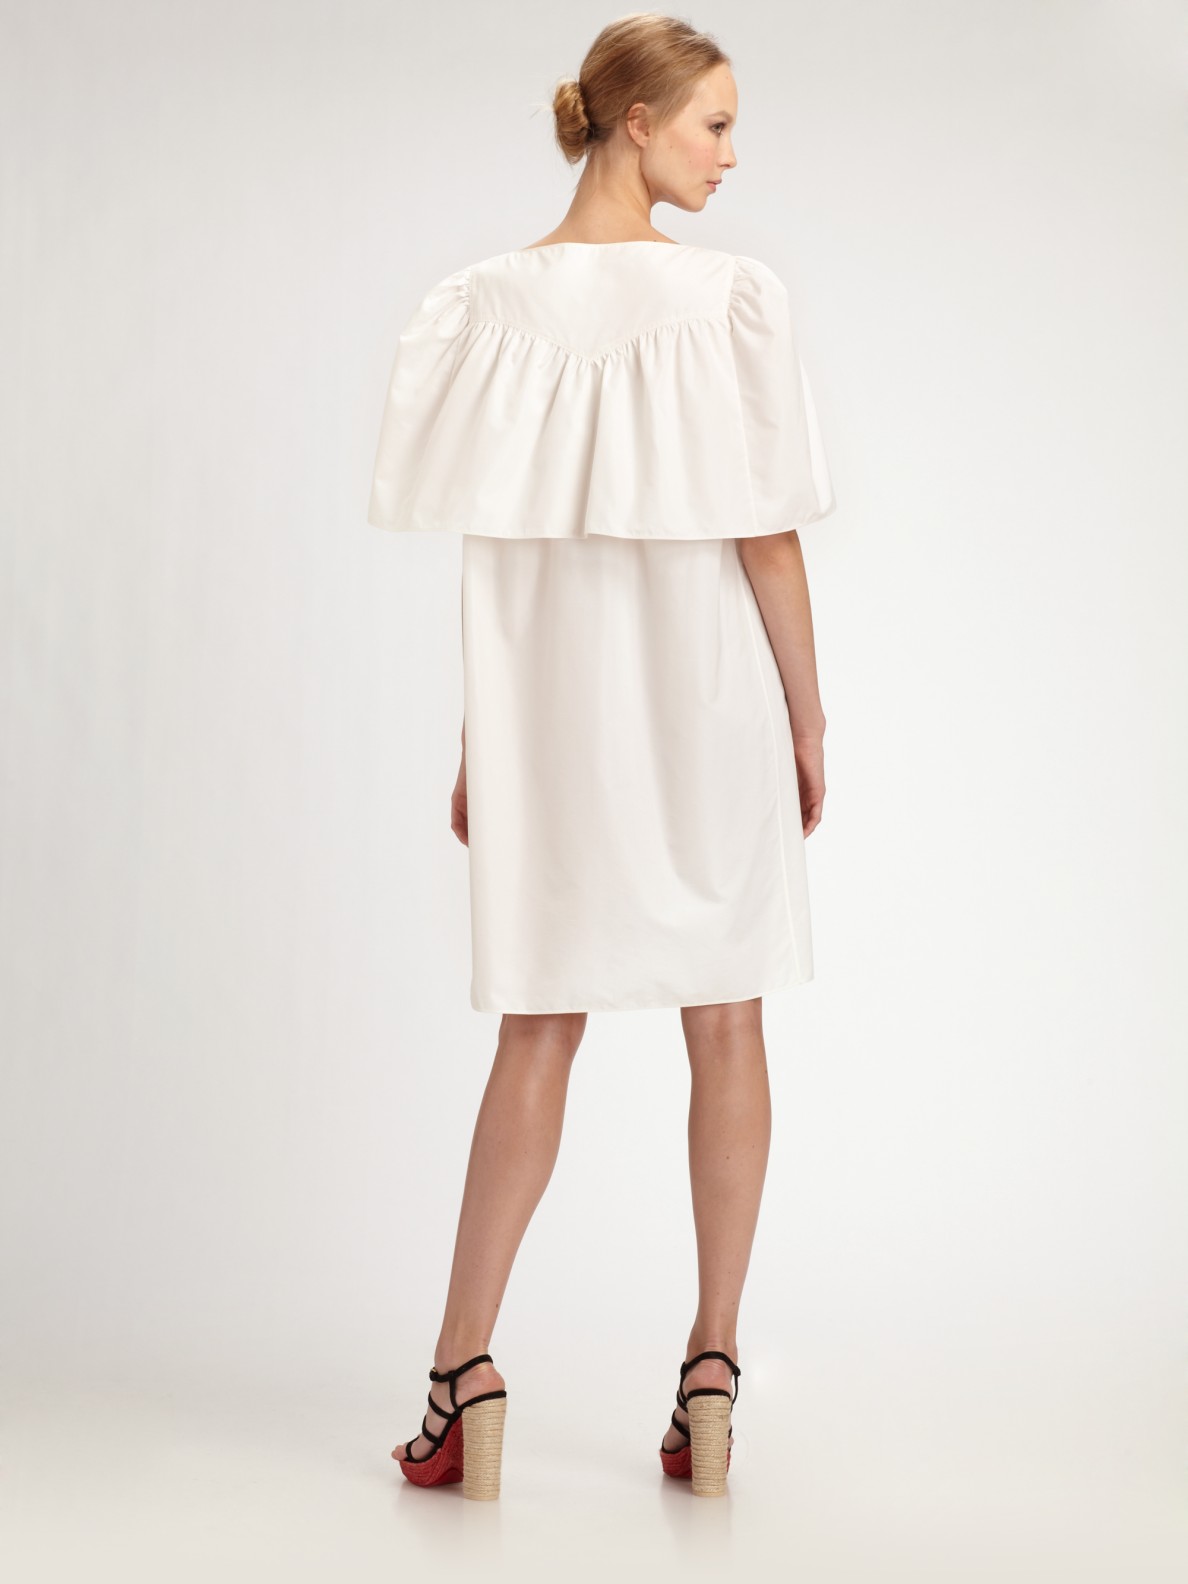 Lyst - Saint Laurent Cotton/silk Back Cape Dress in White